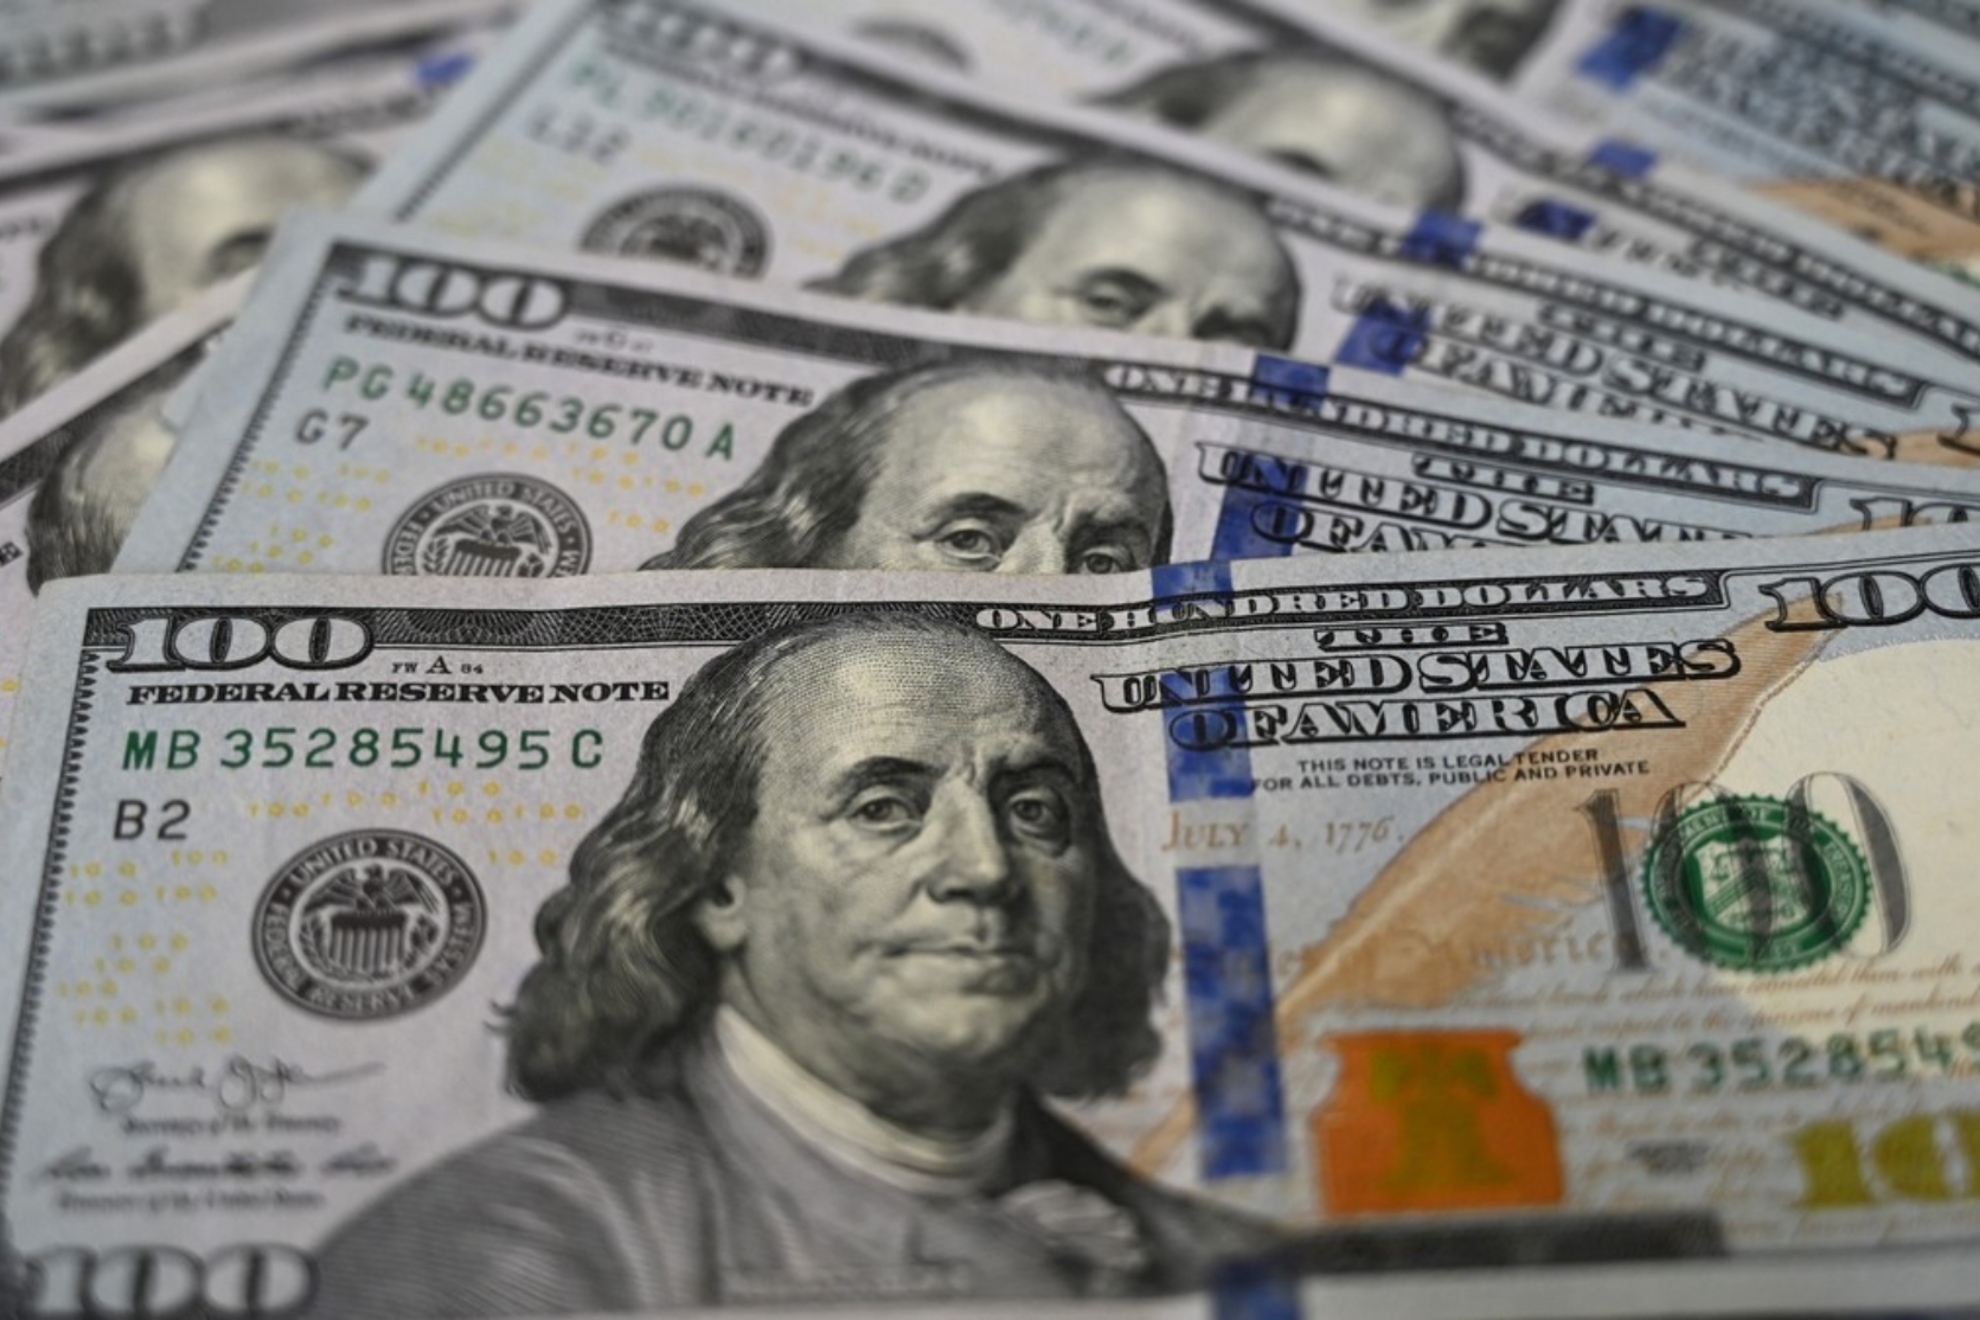 Benjamin Franklin on a $100 dollar bill